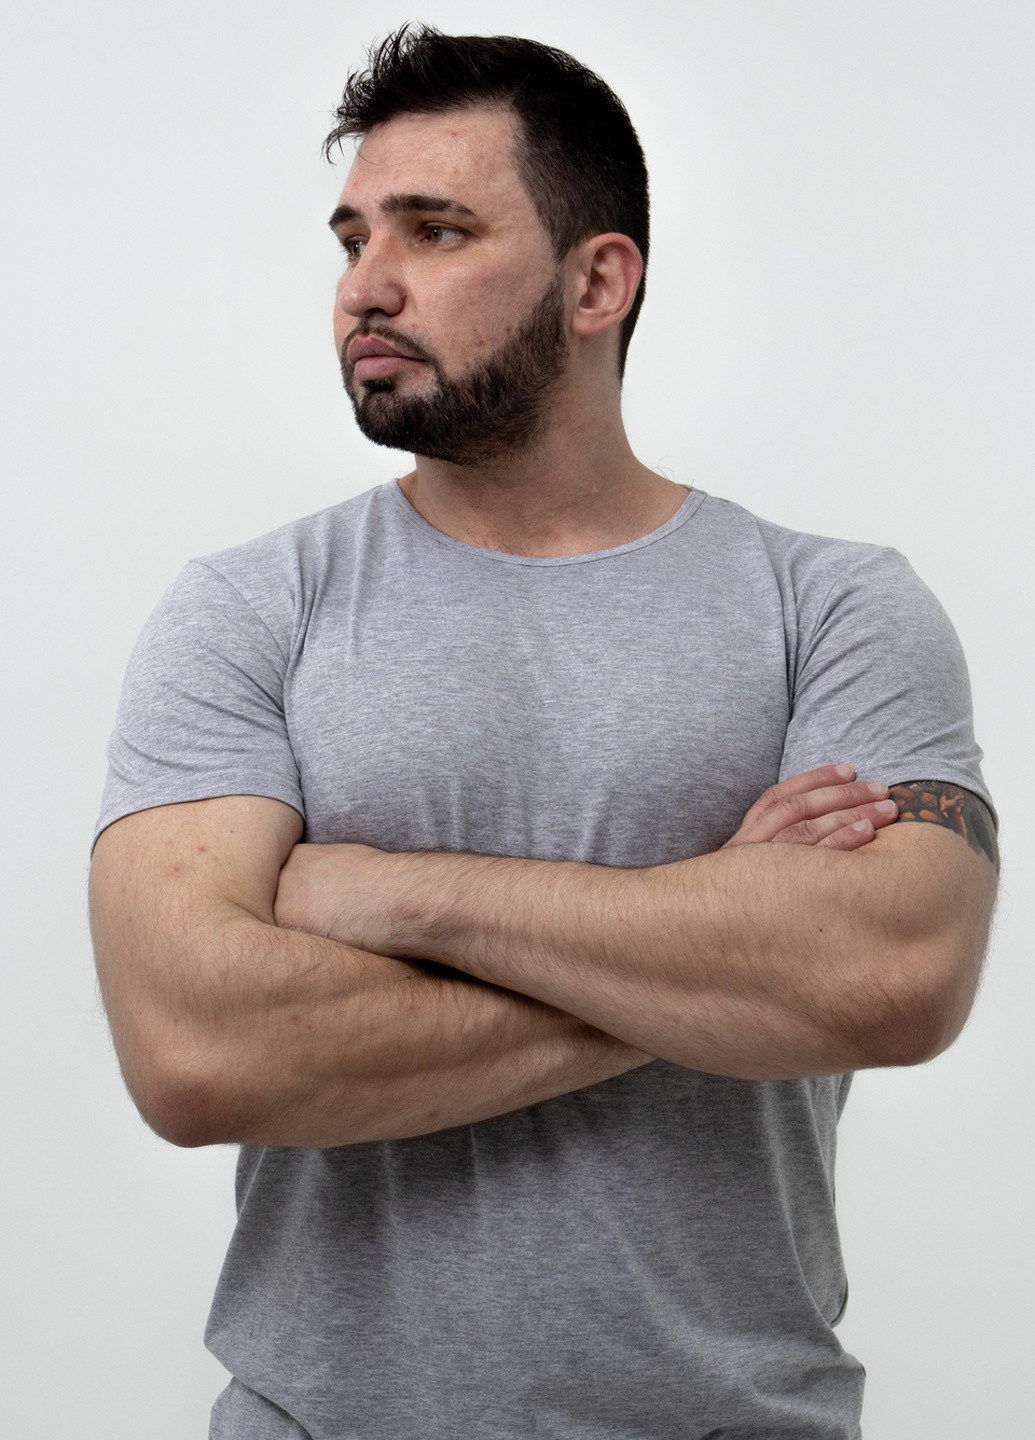 Світло-сіра футболка базова чоловіча з коротким рукавом TvoePolo